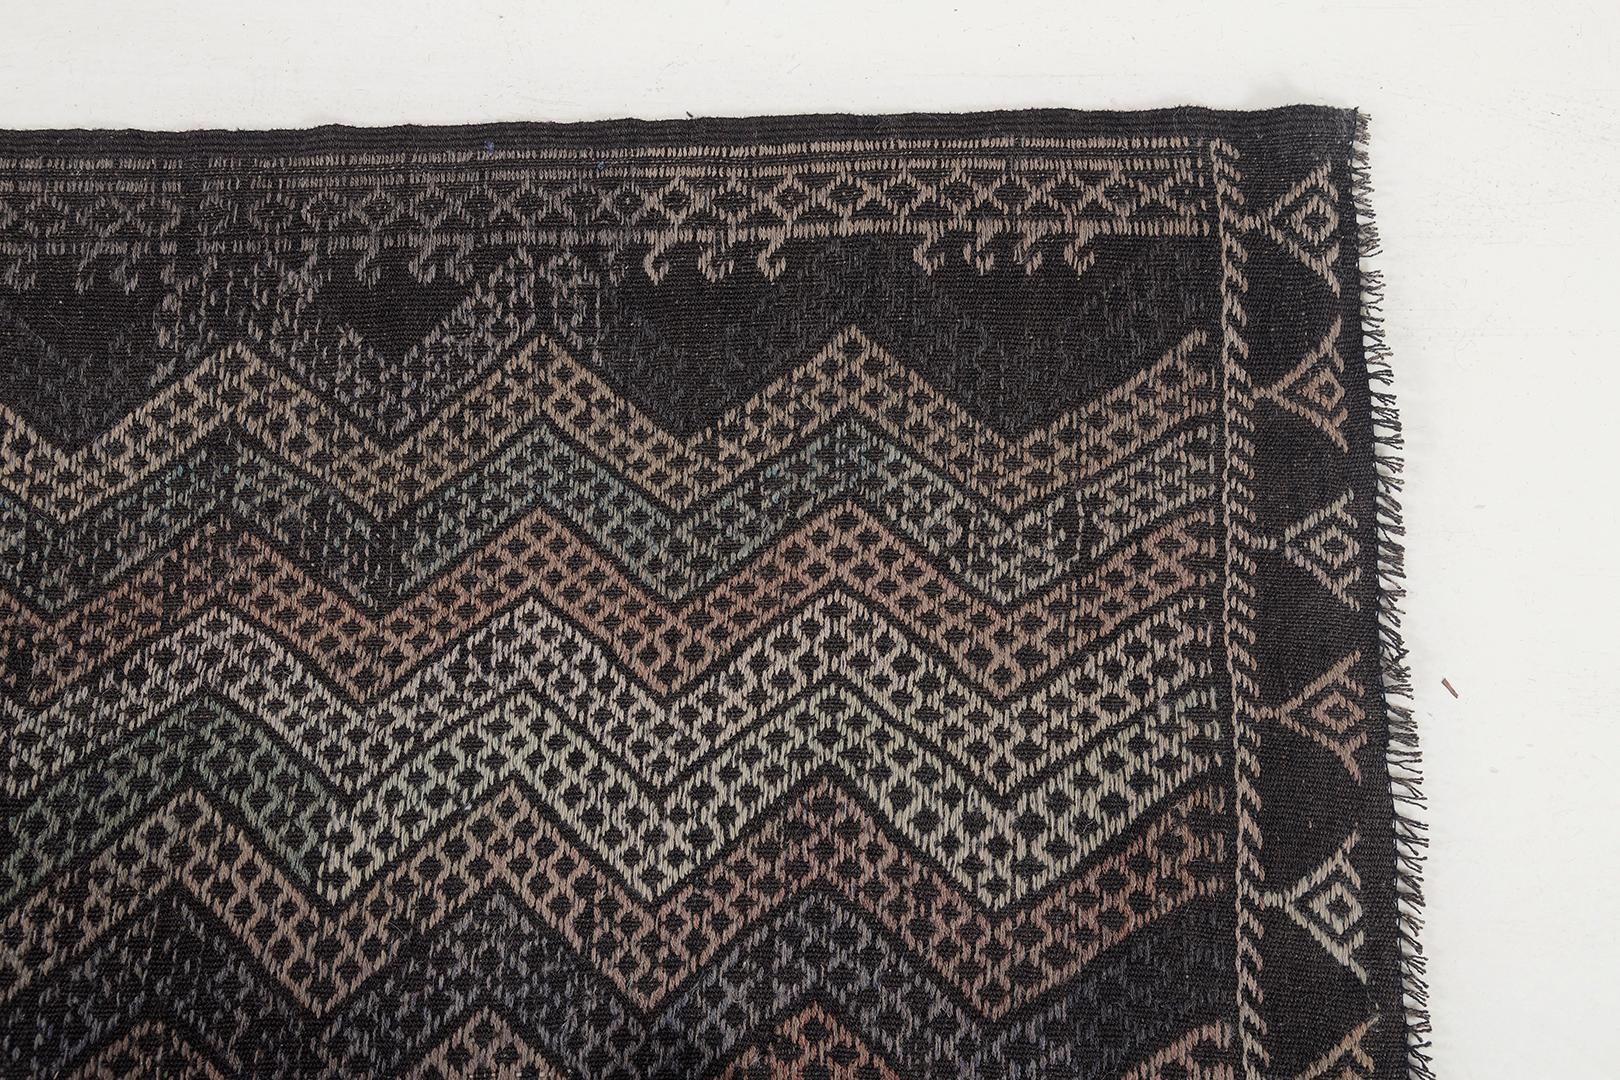 Dieser türkische Jejim-Kilim-Teppich im Vintage-Stil mit seinem verführerischen Kunsteffekt verleiht dem Raum eine warme und unverwechselbare Textur und eine zarte grafische Ausstrahlung. Das strukturierte Feld ist mit einem All-Over-Zickzack-Muster